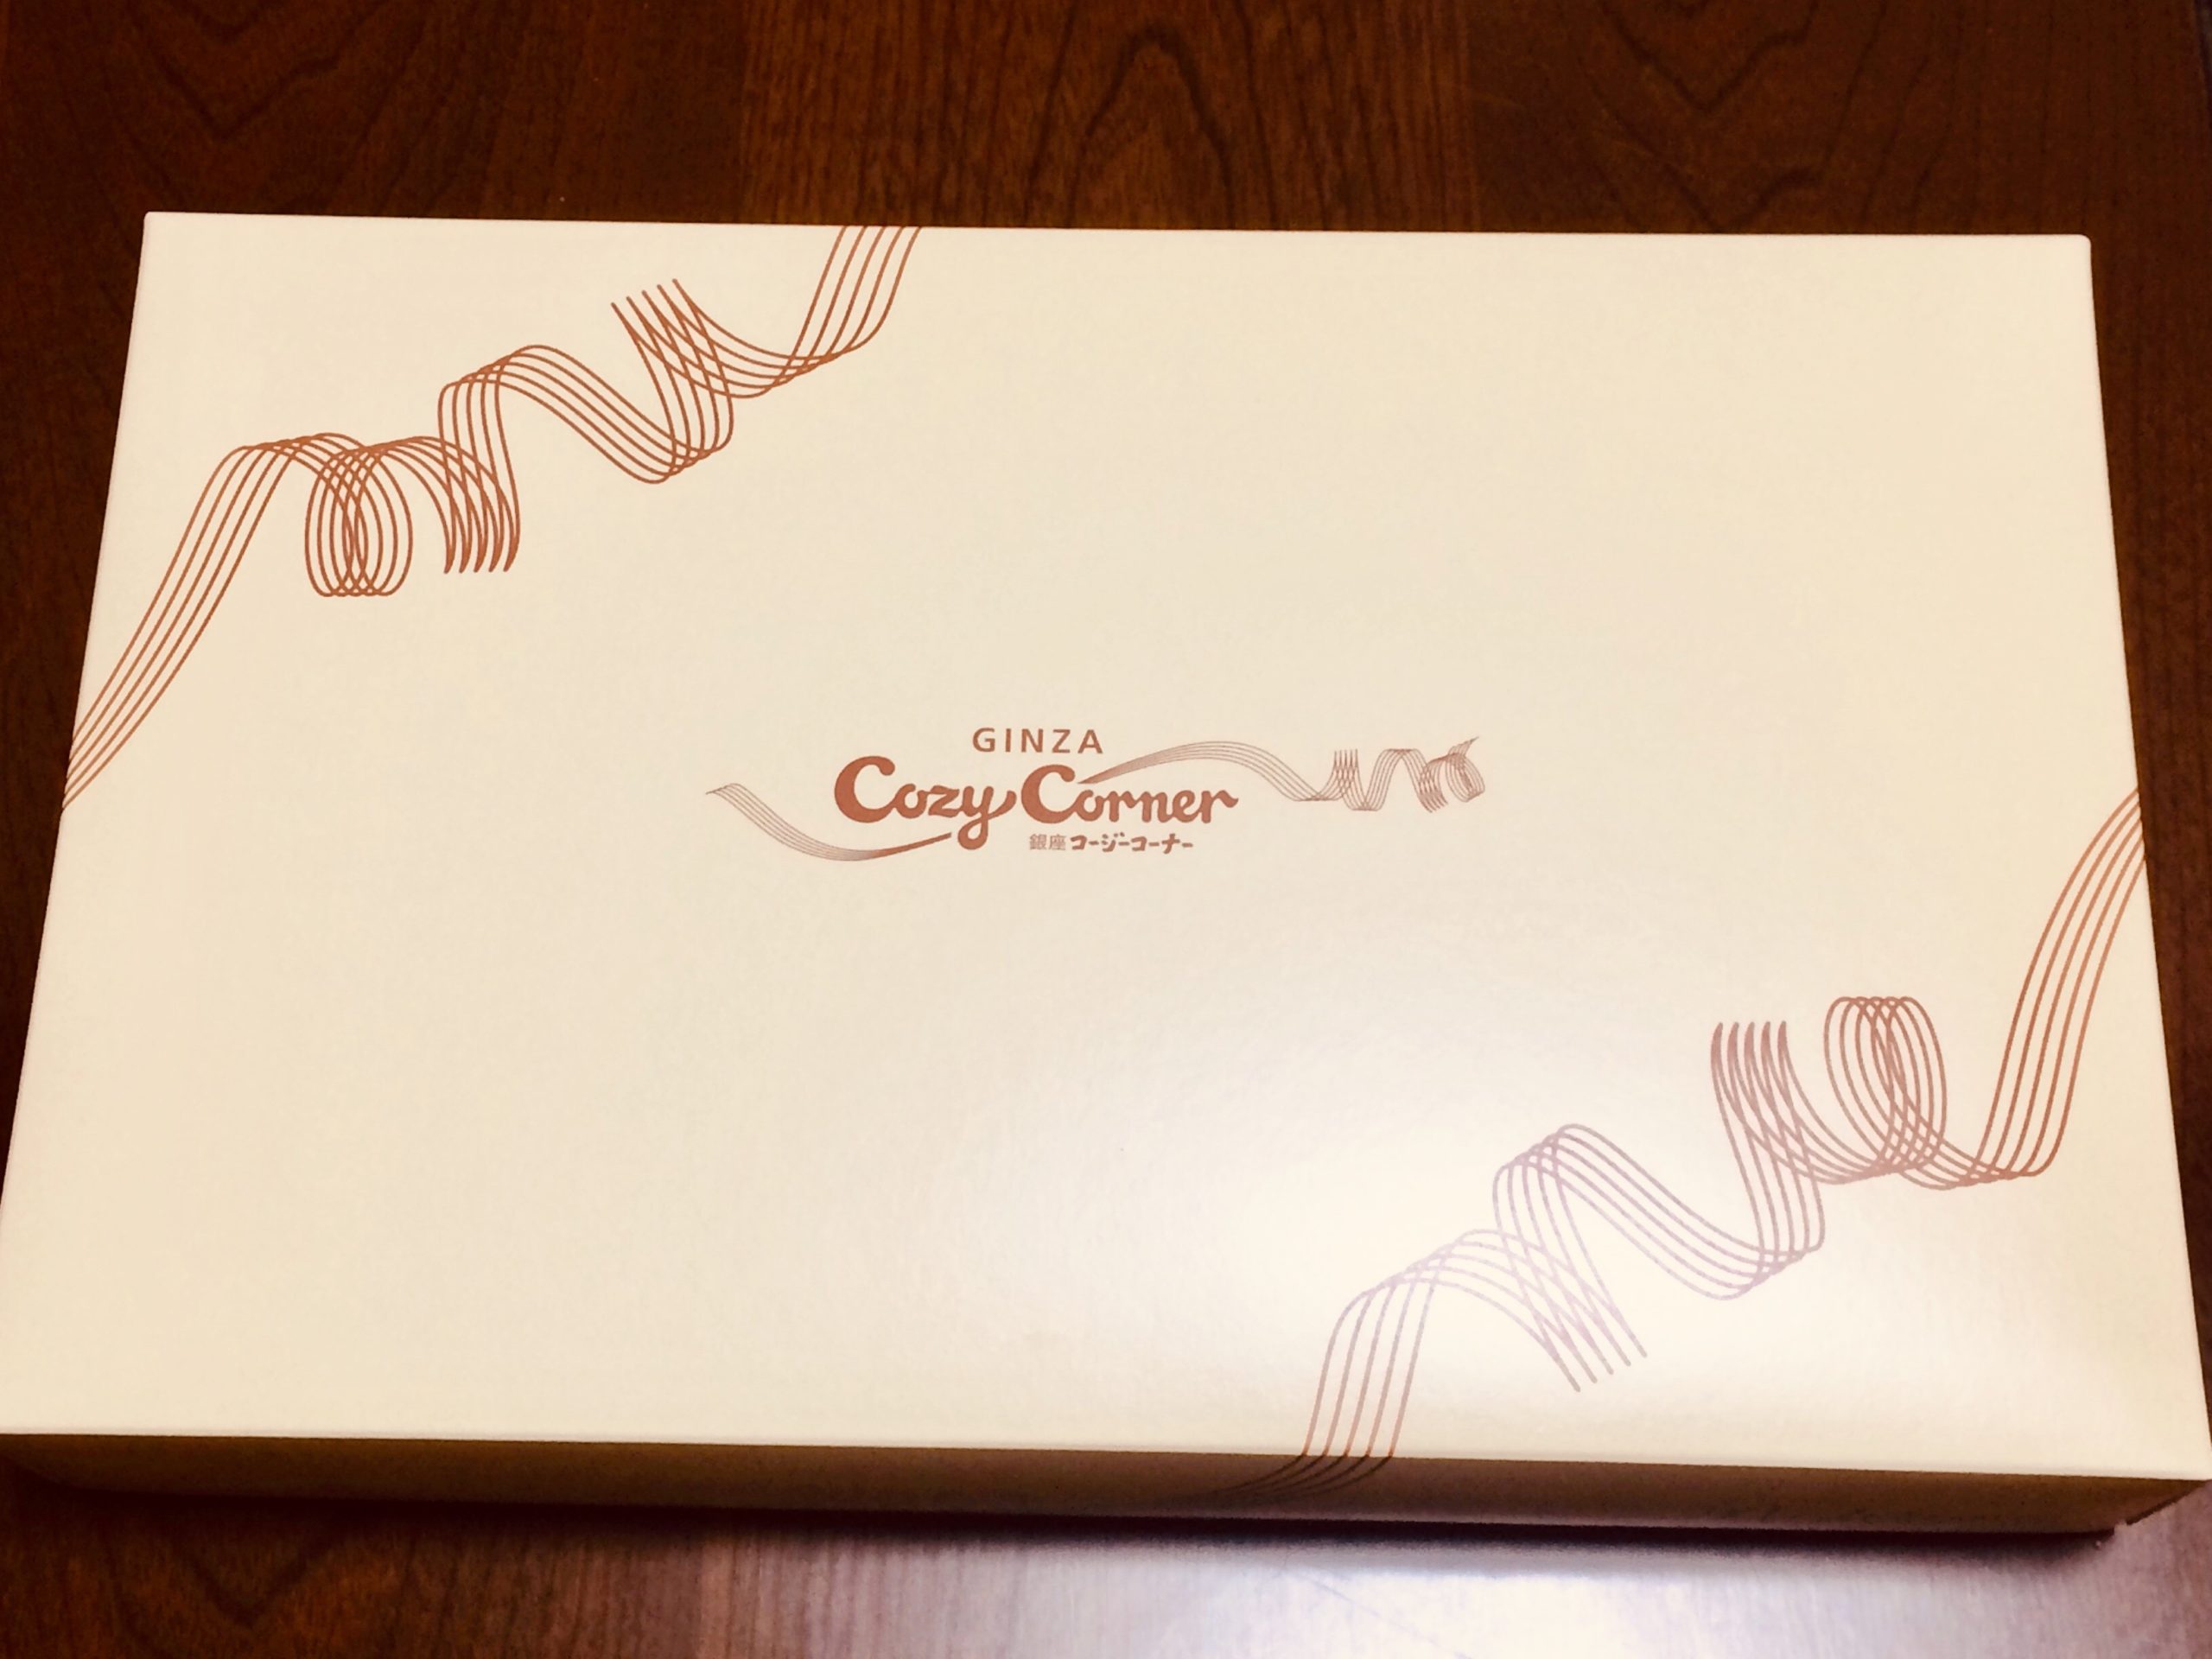 銀座コージーコーナー マドレーヌミックス Nyainの新商品